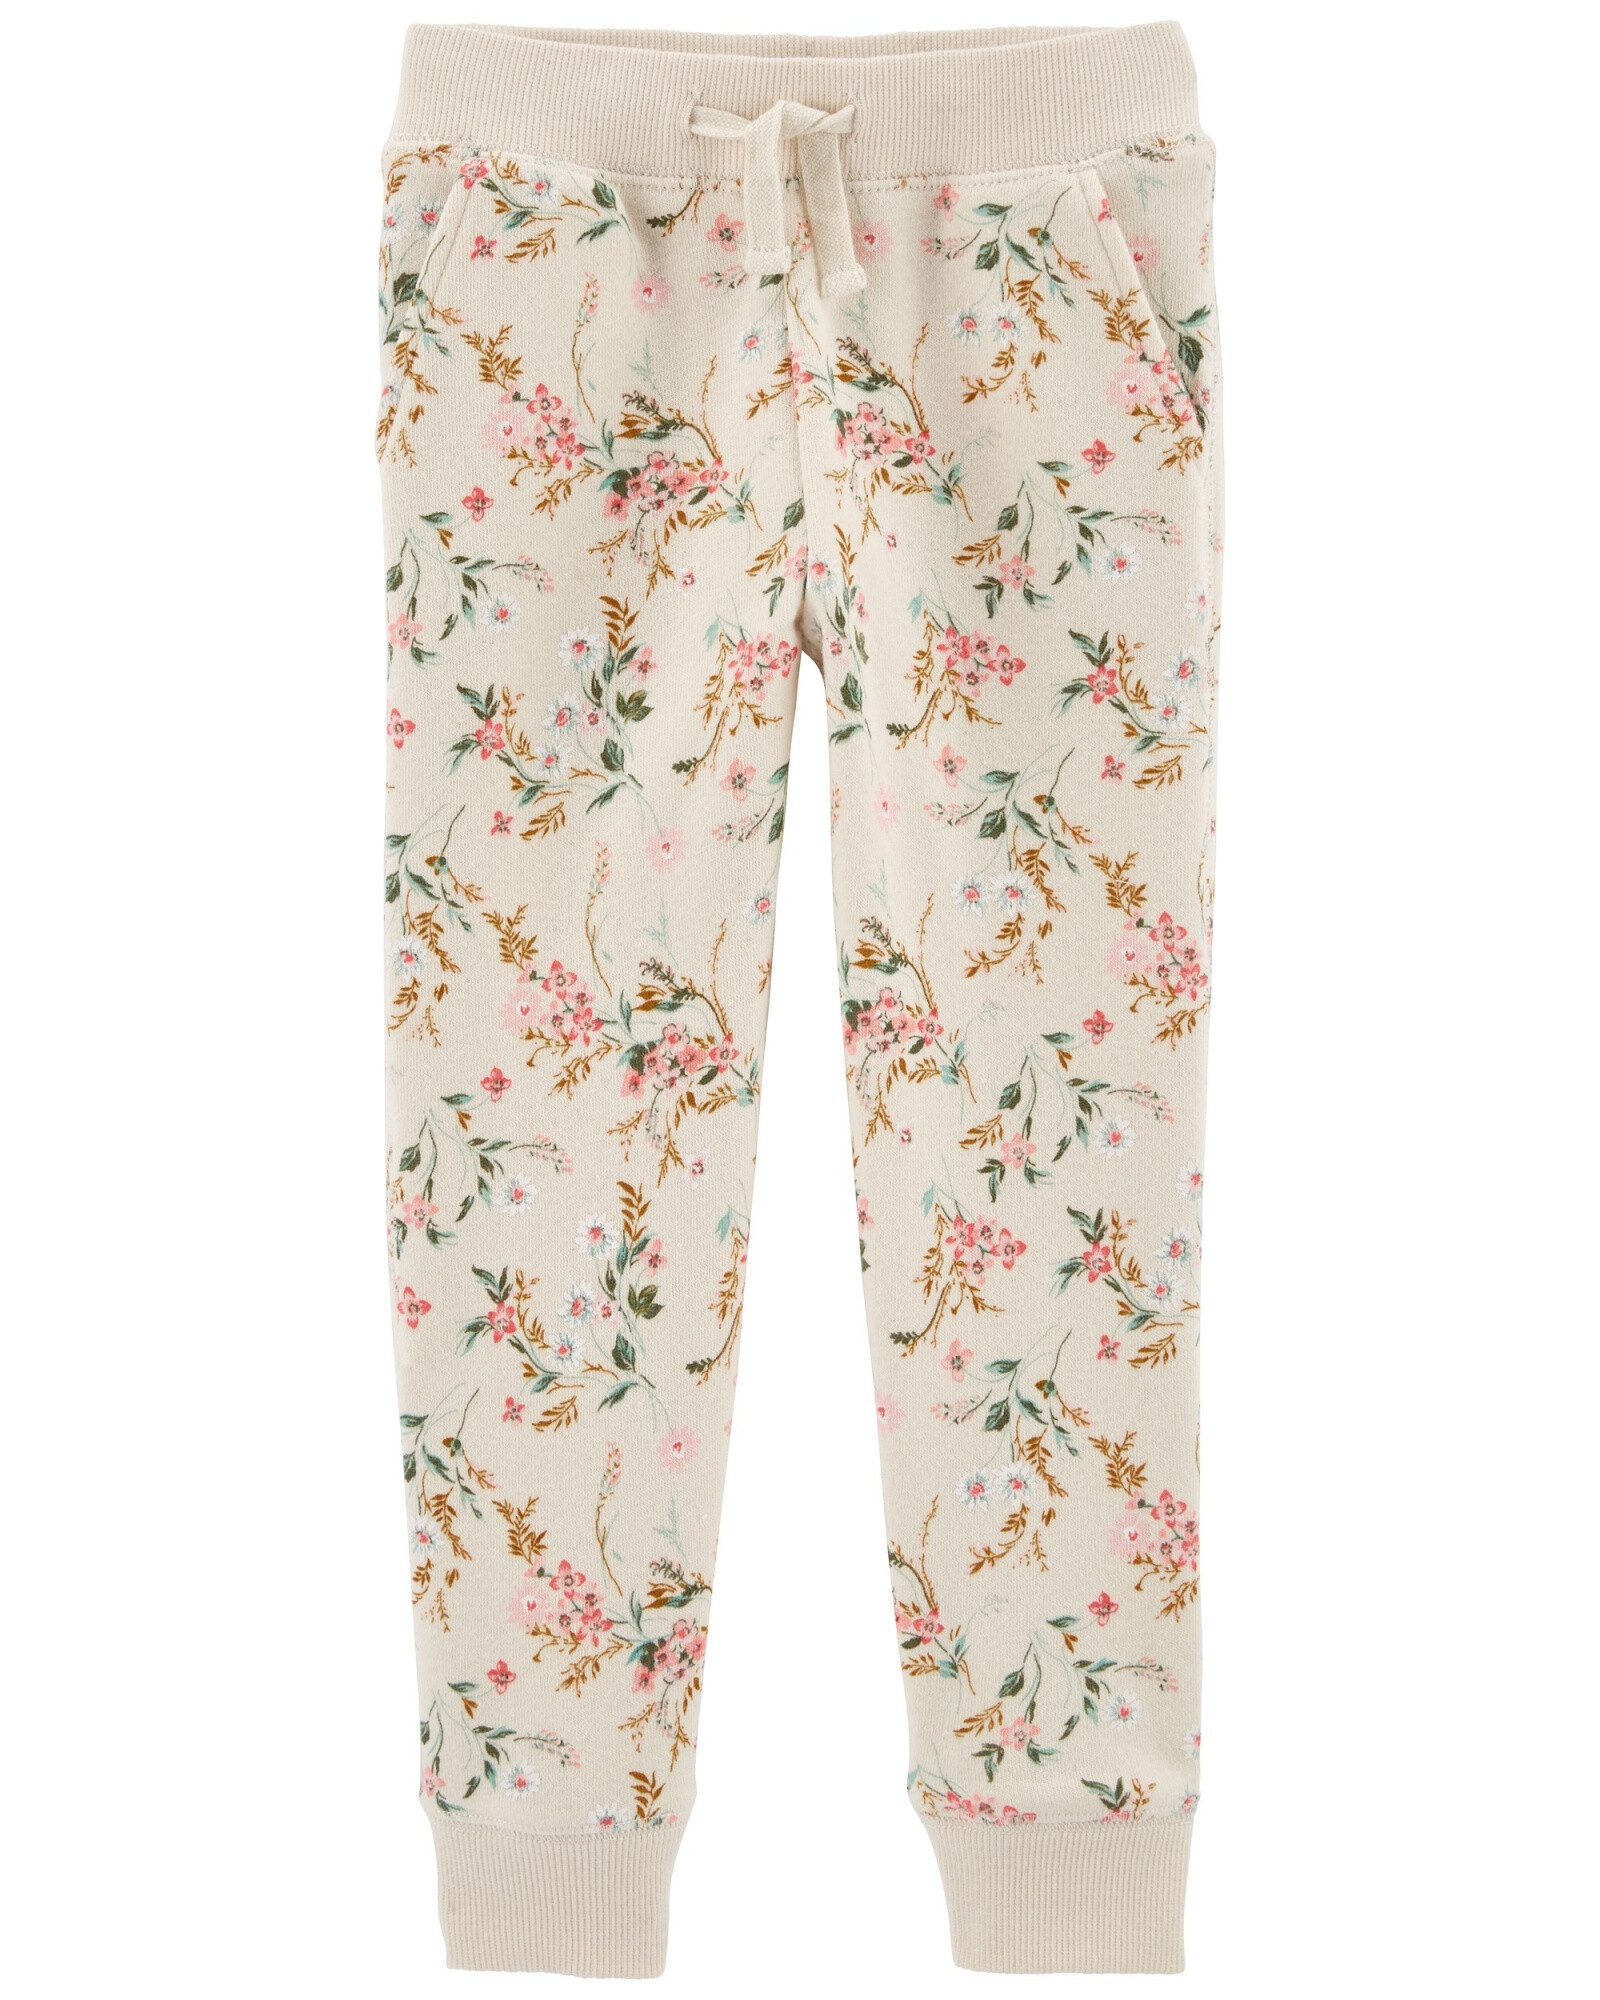 Pantalón deportivo de algodón, diseño floral Sin color